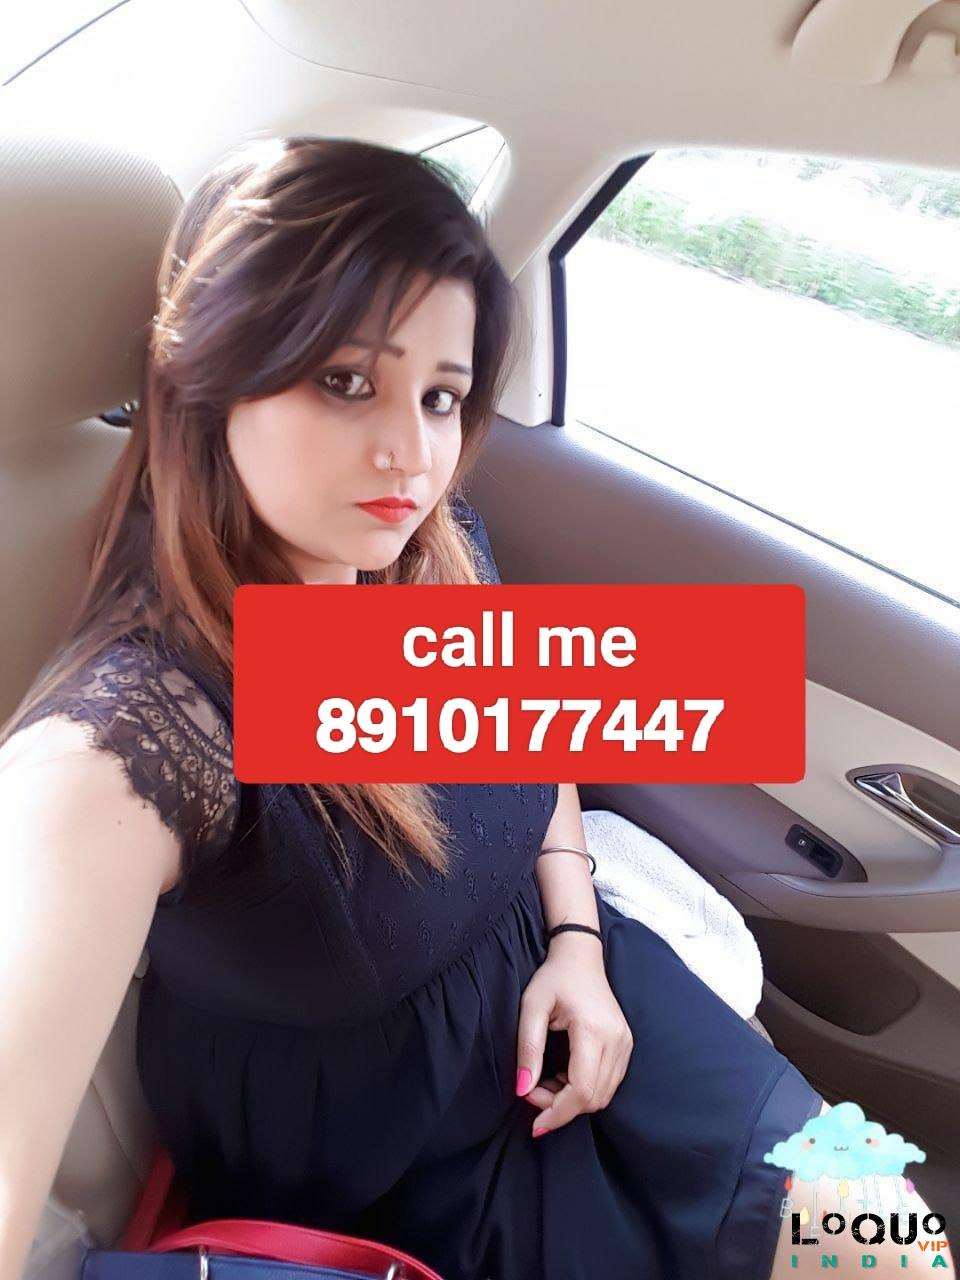 Call Girls West Bengal: Dumdum❤CALL GIRL 8910177447 ❤CALL GIRLS IN ESCORT SERVICE❤CALL GIRL